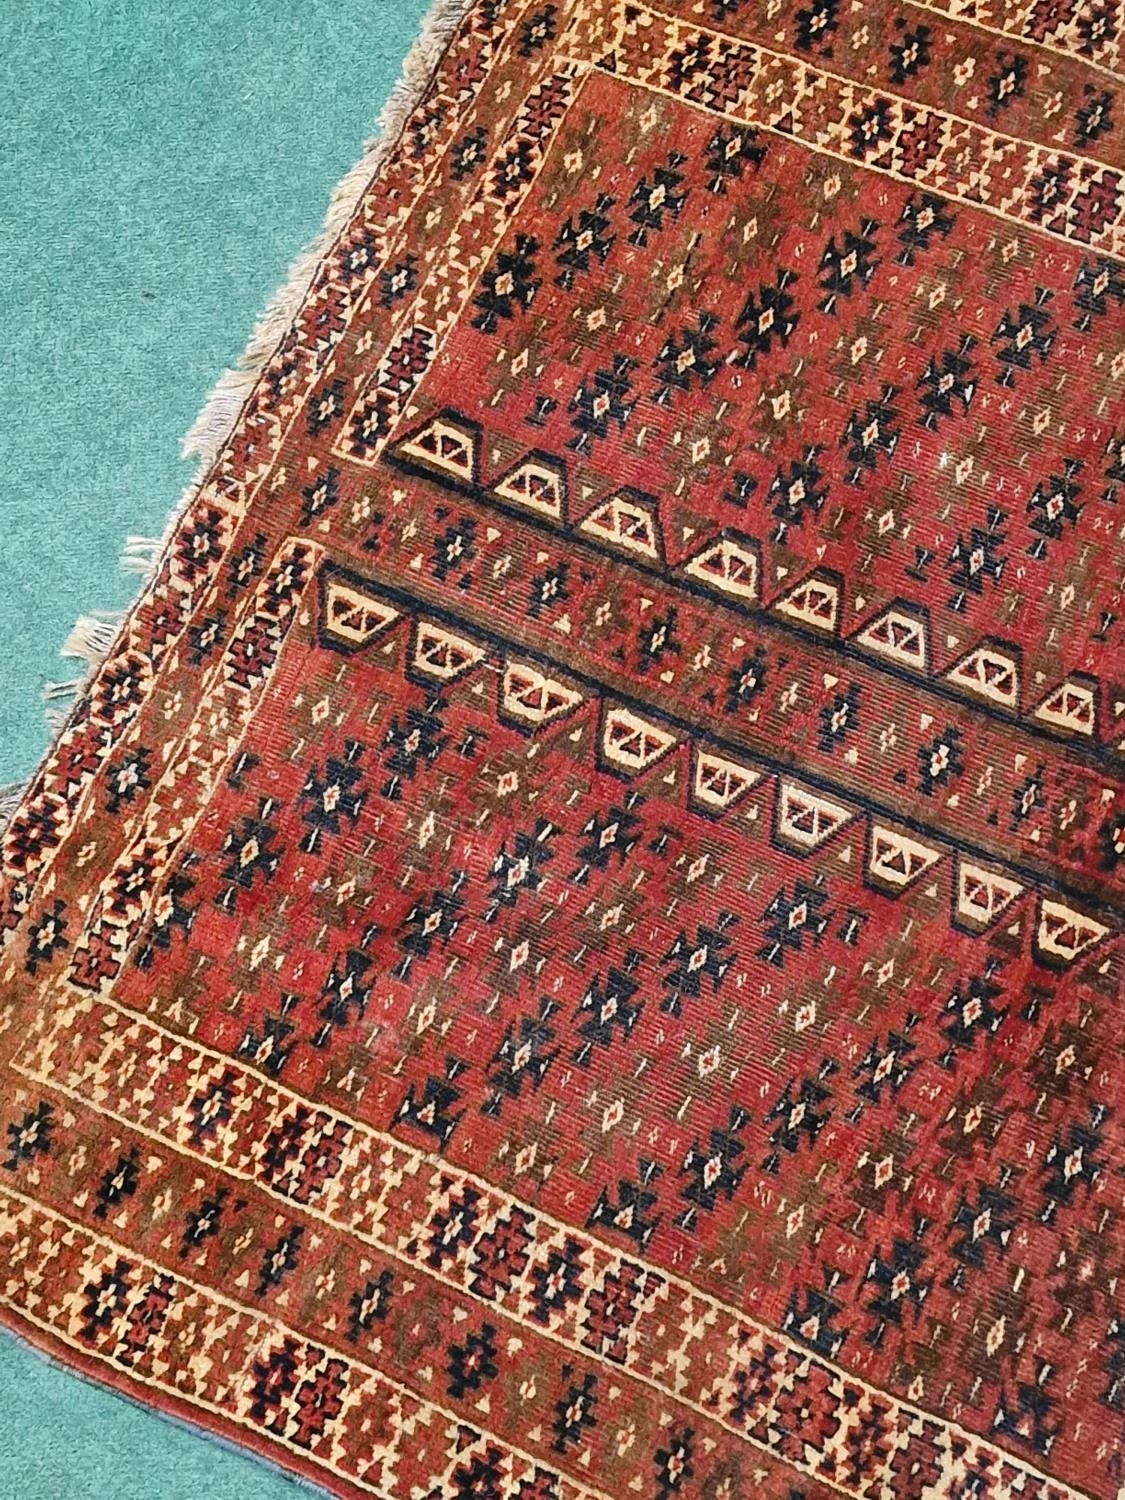 Vintage Yomut Turkmen design rug with Elem panels 190x130cm - Image 2 of 4